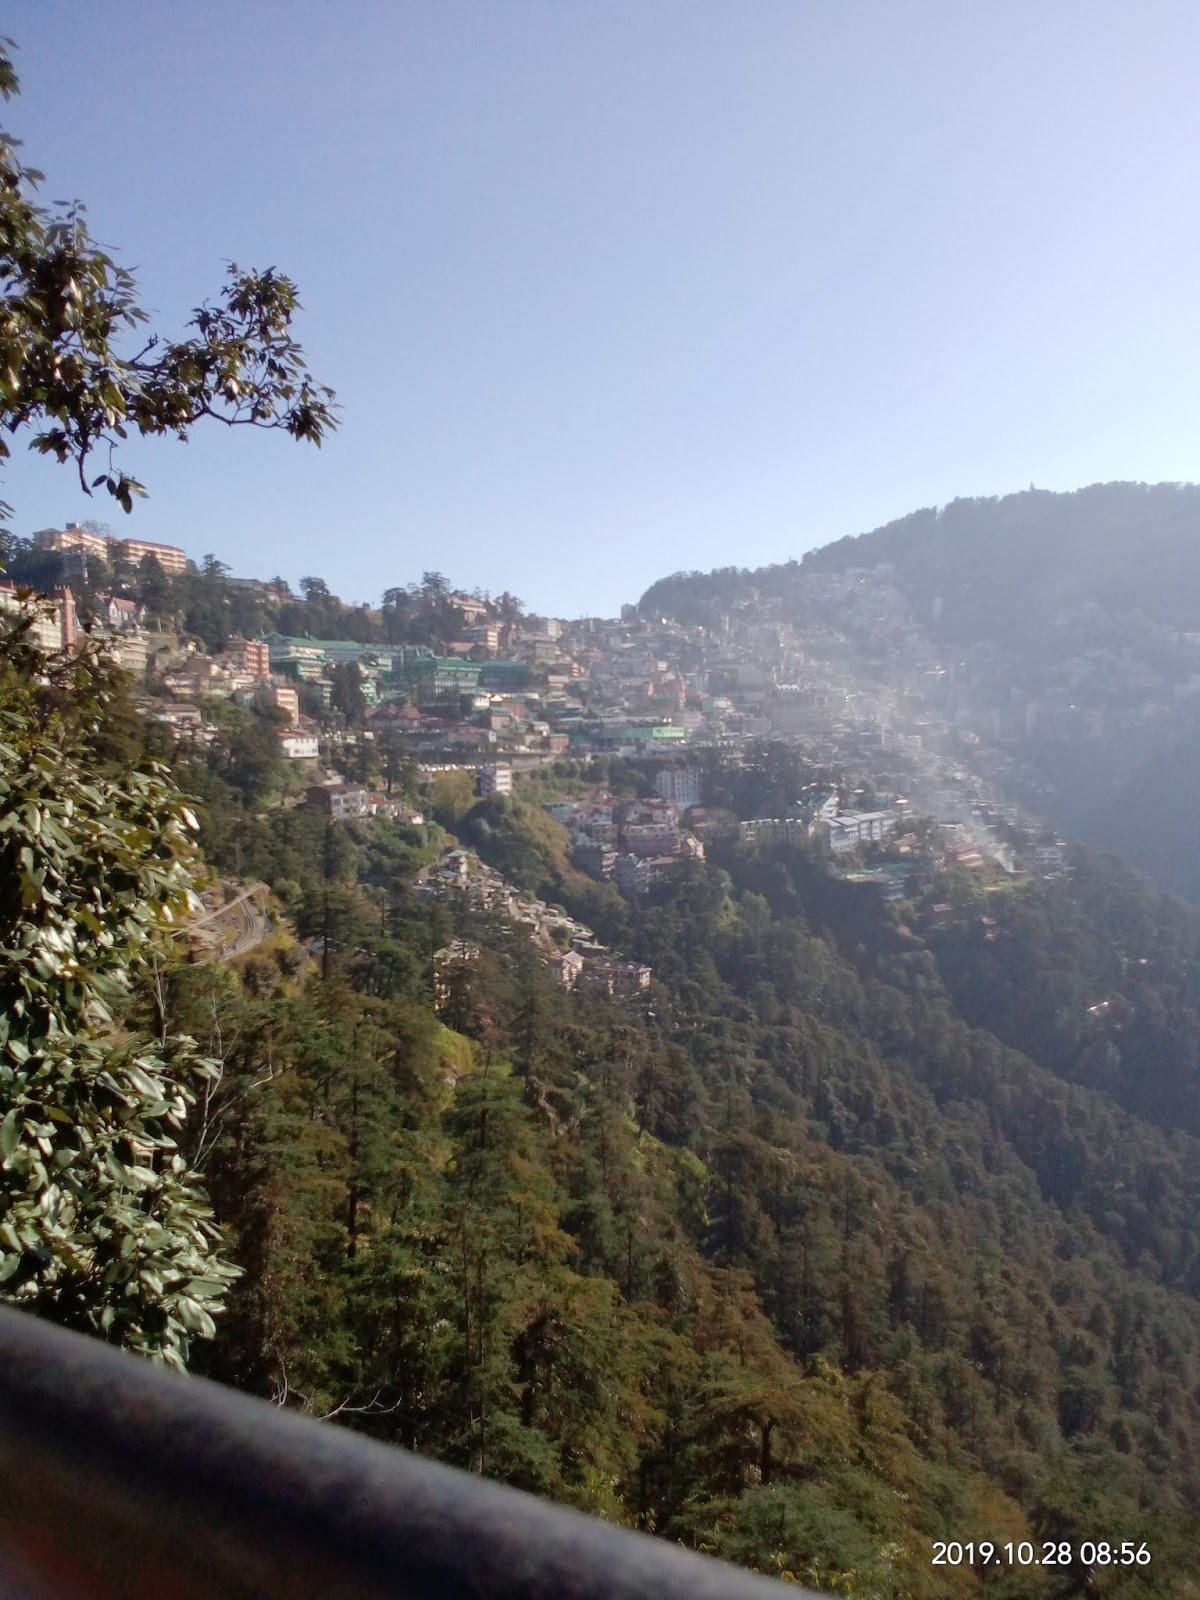 Shimla Local Sightseeing | Shimla Sightseeing